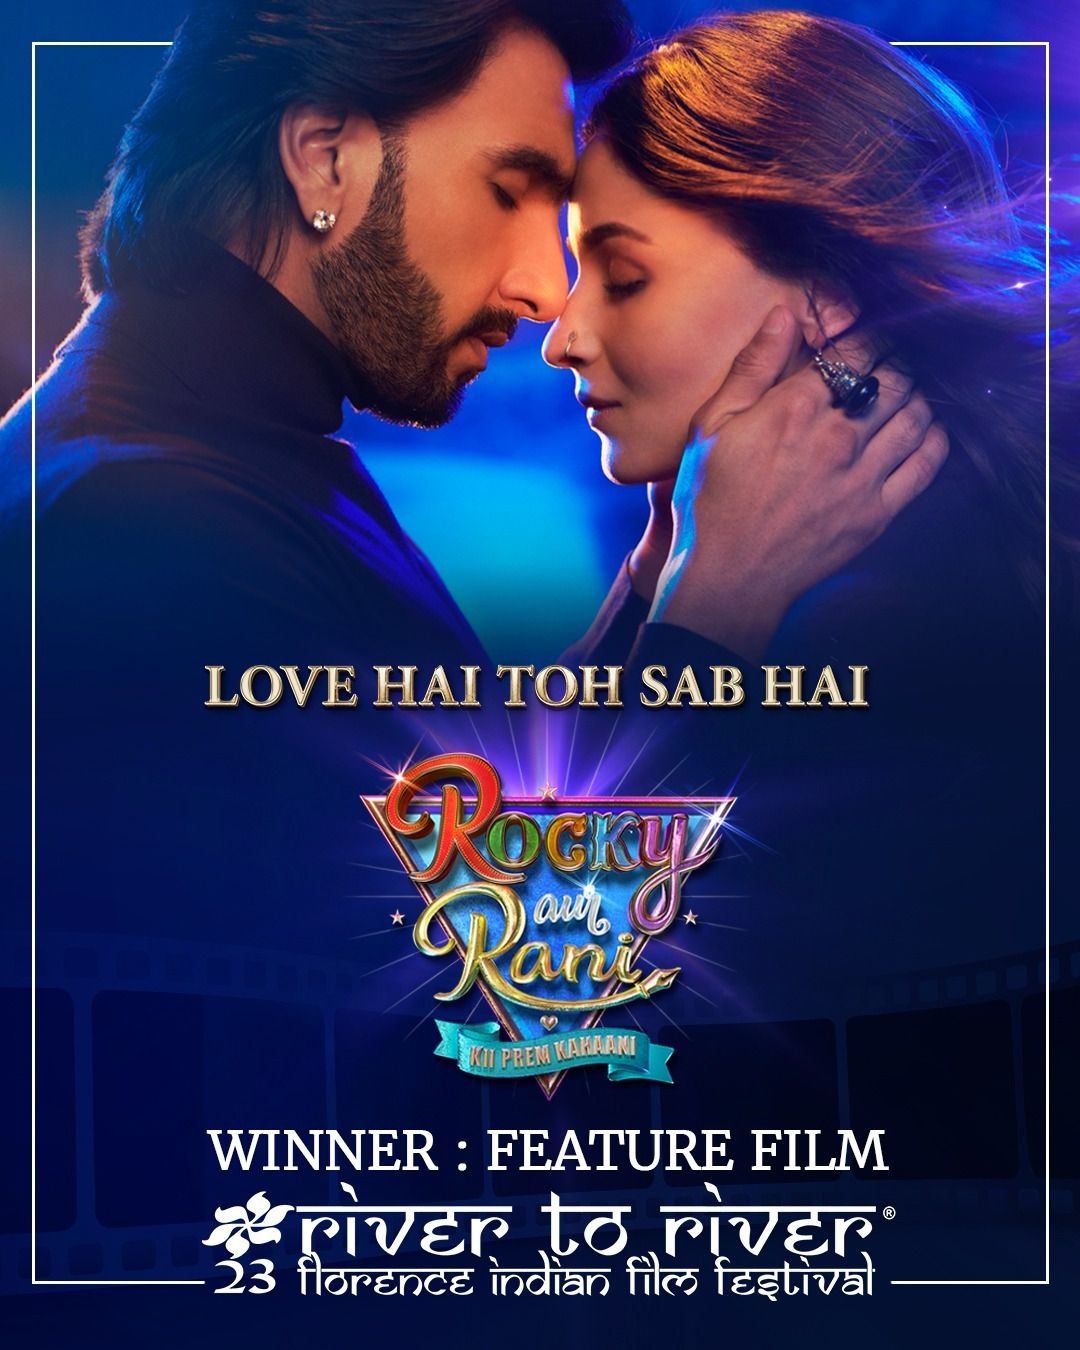 Rocky Aur Rani Kii Prem Kahaani wins feature film award